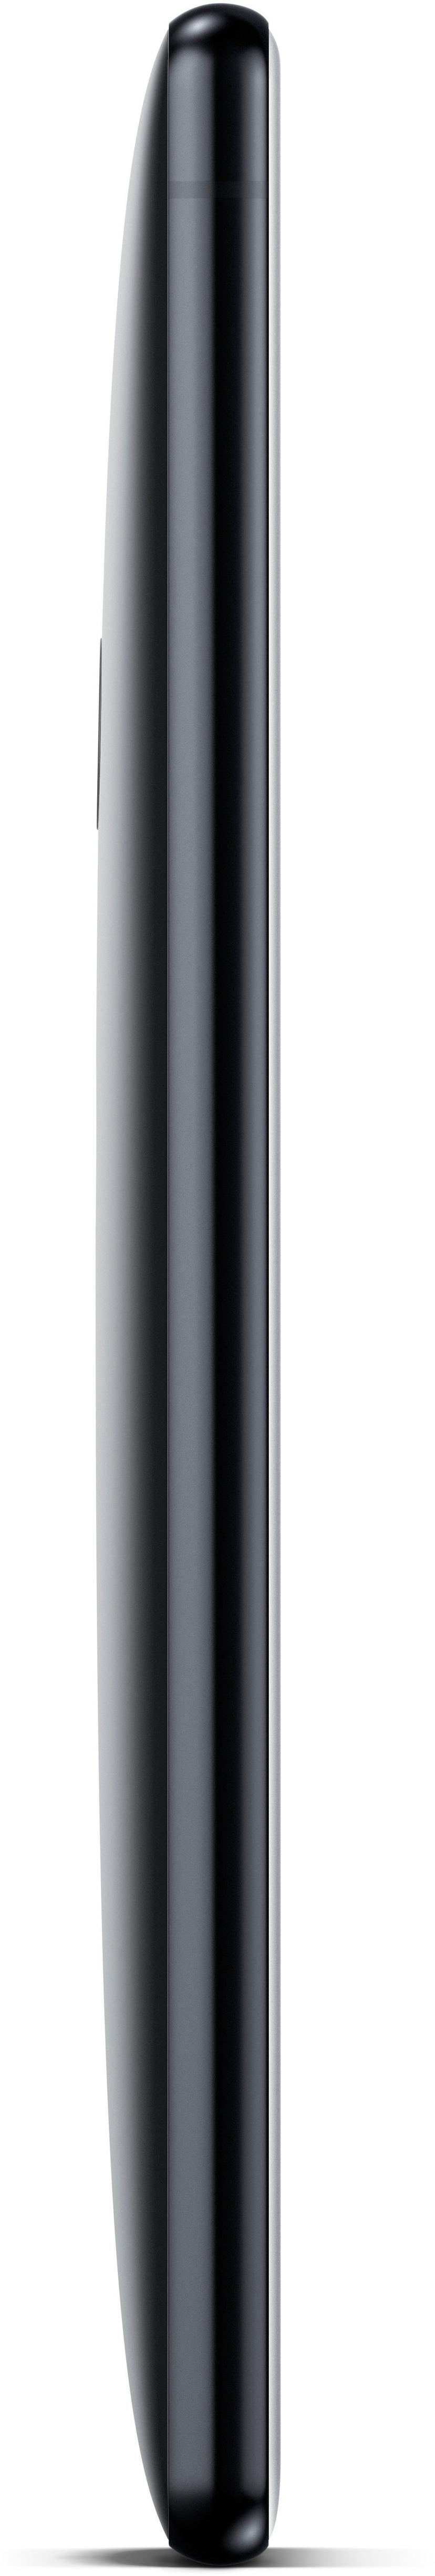 Sony XPERIA XZ2 + STH40D 64GB Kaksois-SIM Liquid black